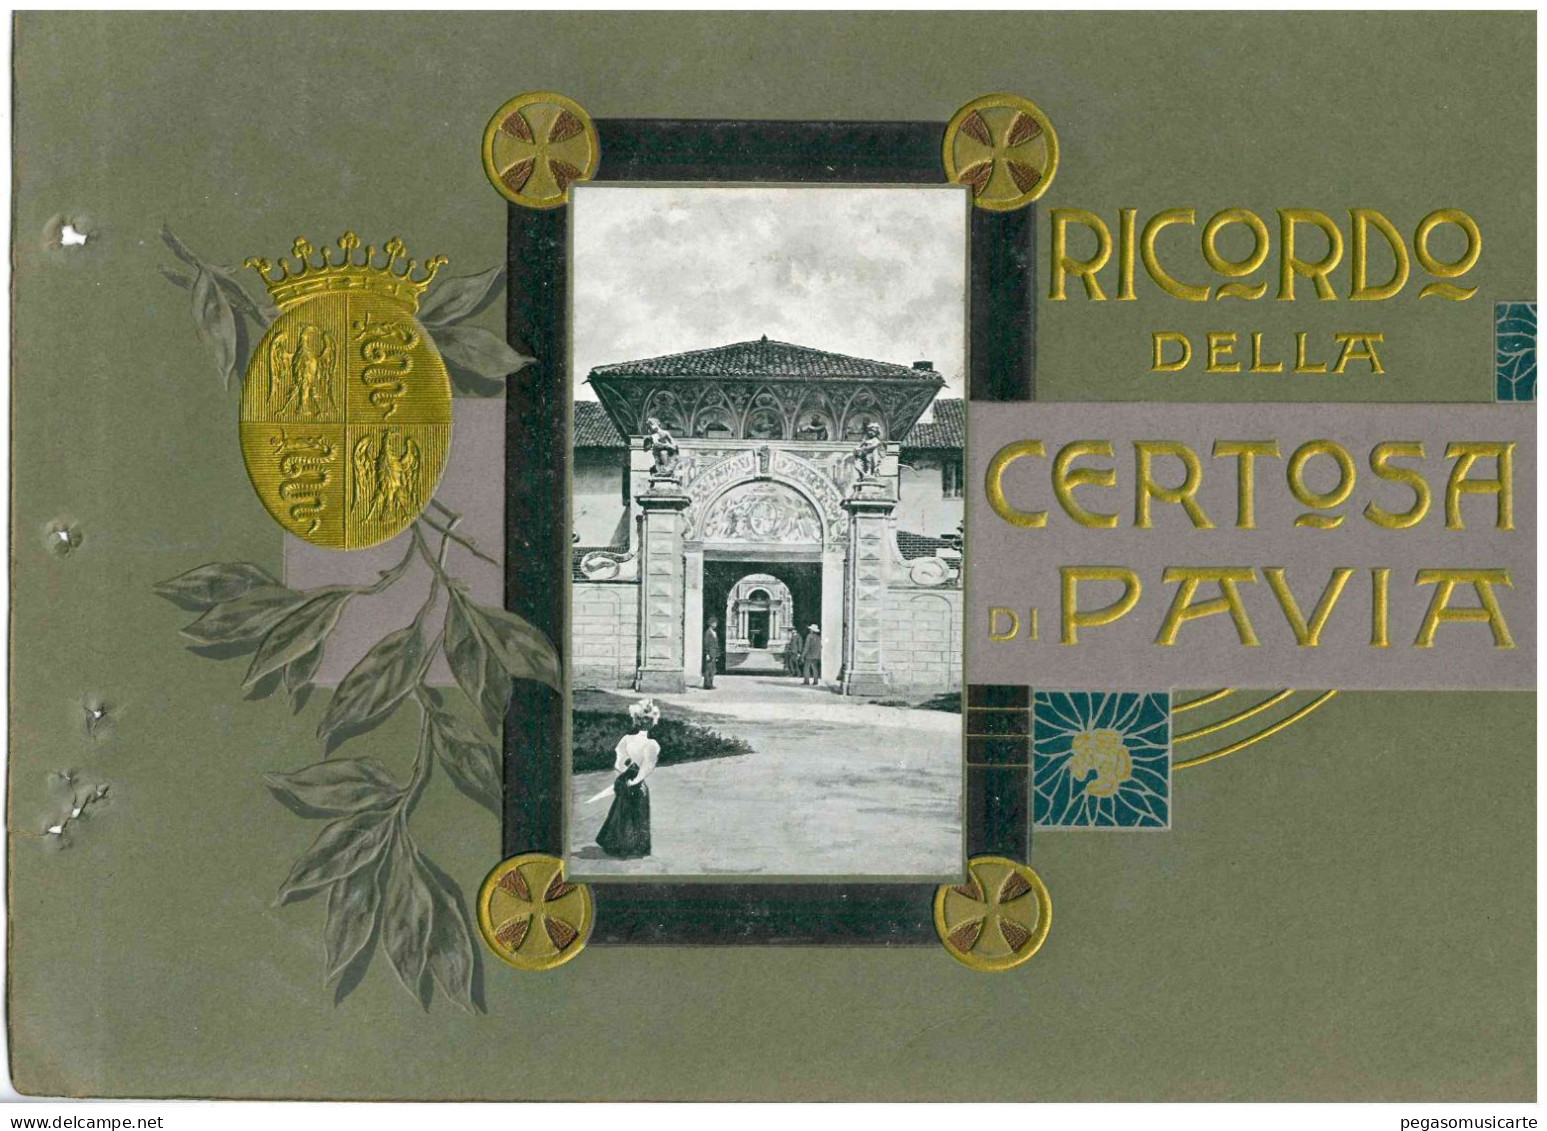 COPERTINA ALBUM FOTOGRAFICO CARTOLINA RICORDO DELLA CERTOSA DI PAVIA SOLO COPERTINA - CM 20X30 - Books & Catalogs